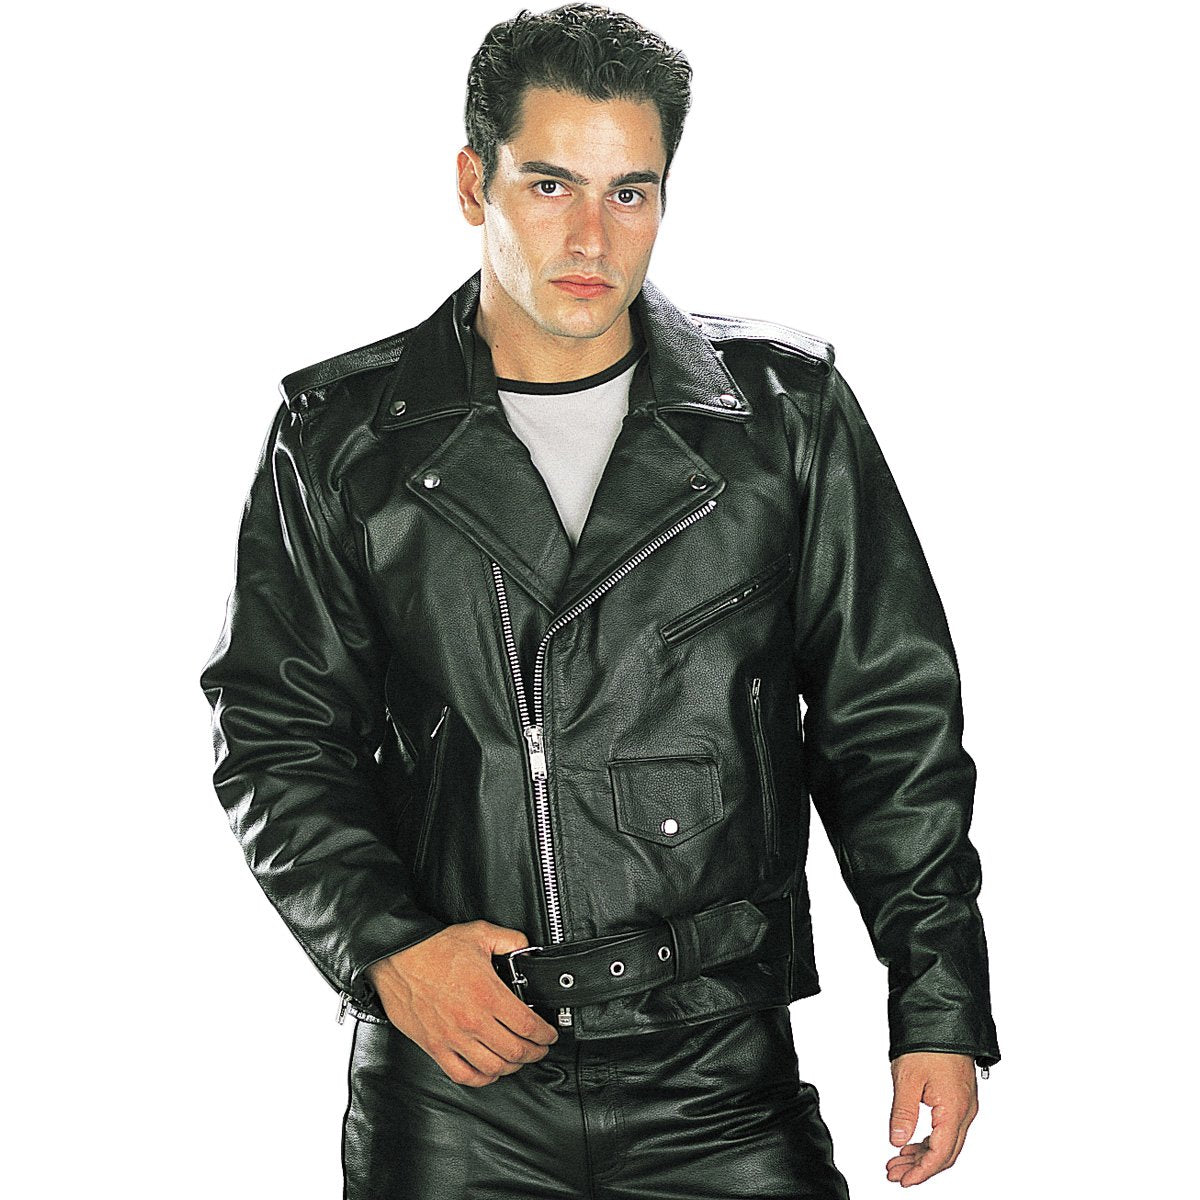 Image of Xelement B7100 Men's 'Classic' Black TOP GRADE Leather Motorcycle Biker Jacket